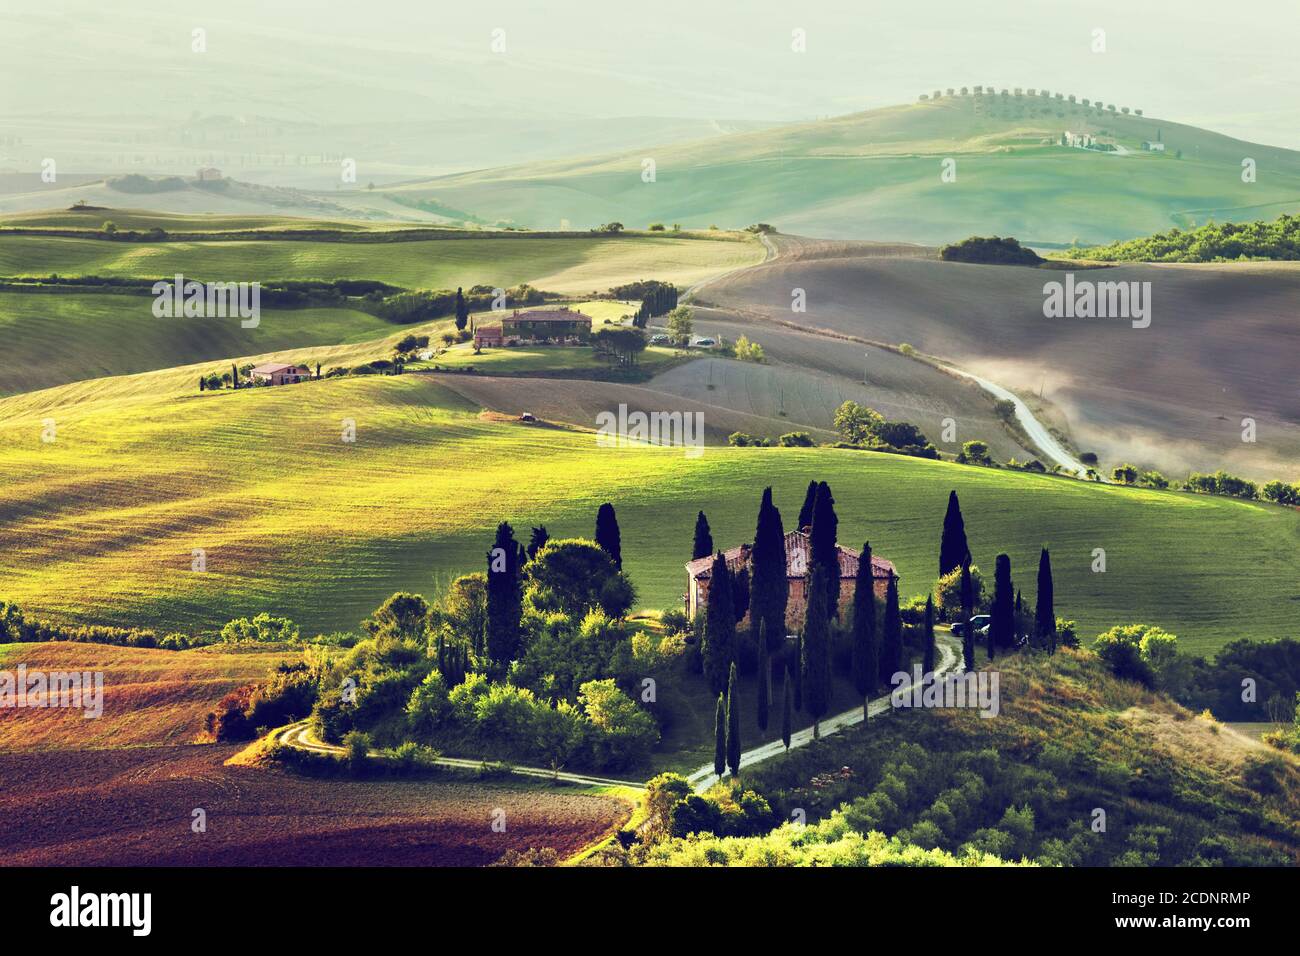 Tuscany landscape at sunrise. Tuscan farm house, vineyard, hills. Stock Photo